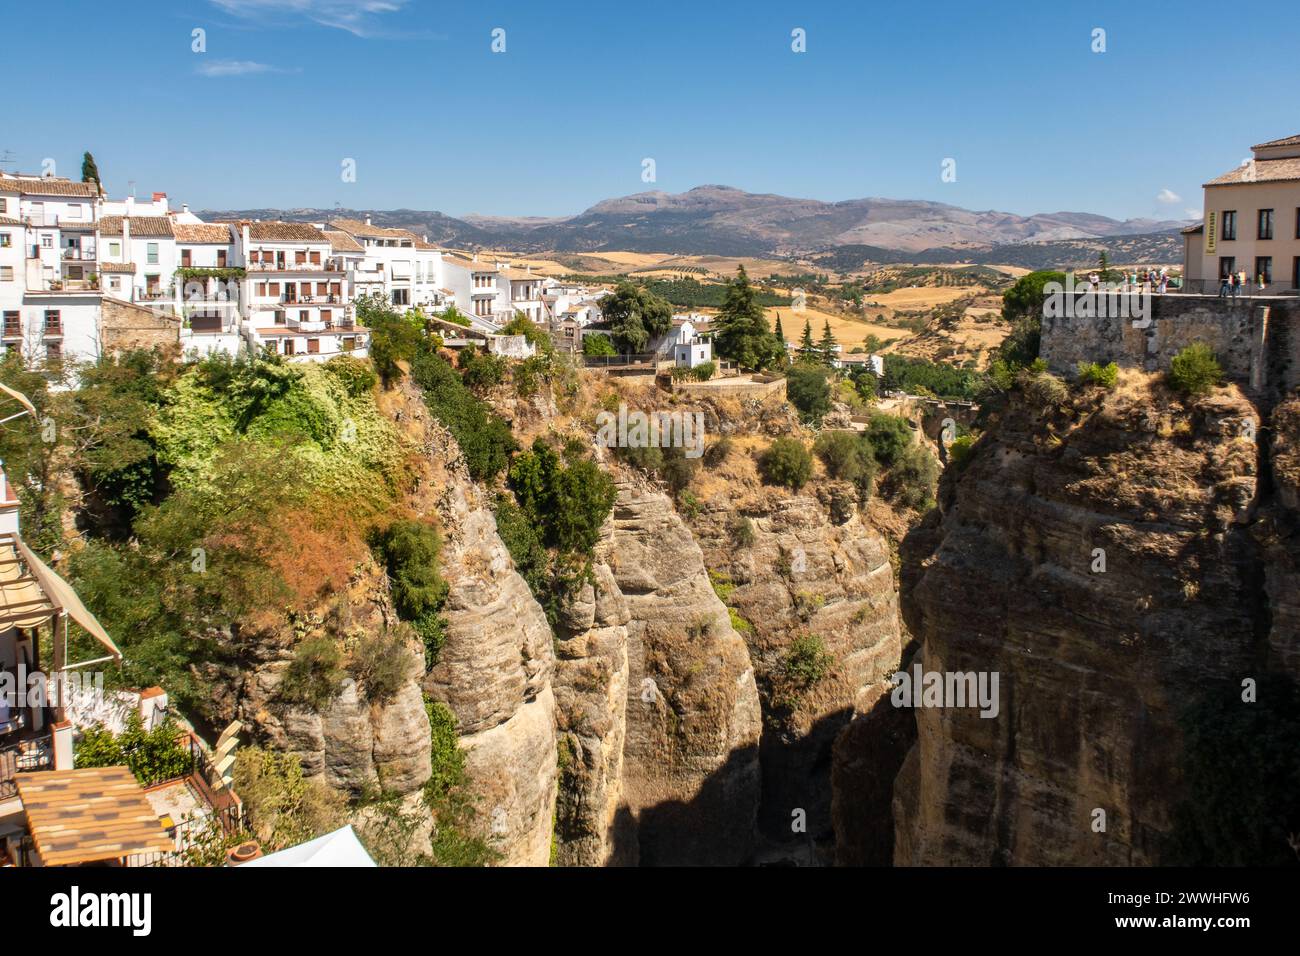 Ronda, ville andalouse située au sommet de gorges profondes spectaculaires, avec des maisons espagnoles blanches traditionnelles et des falaises abruptes, Espagne. Banque D'Images